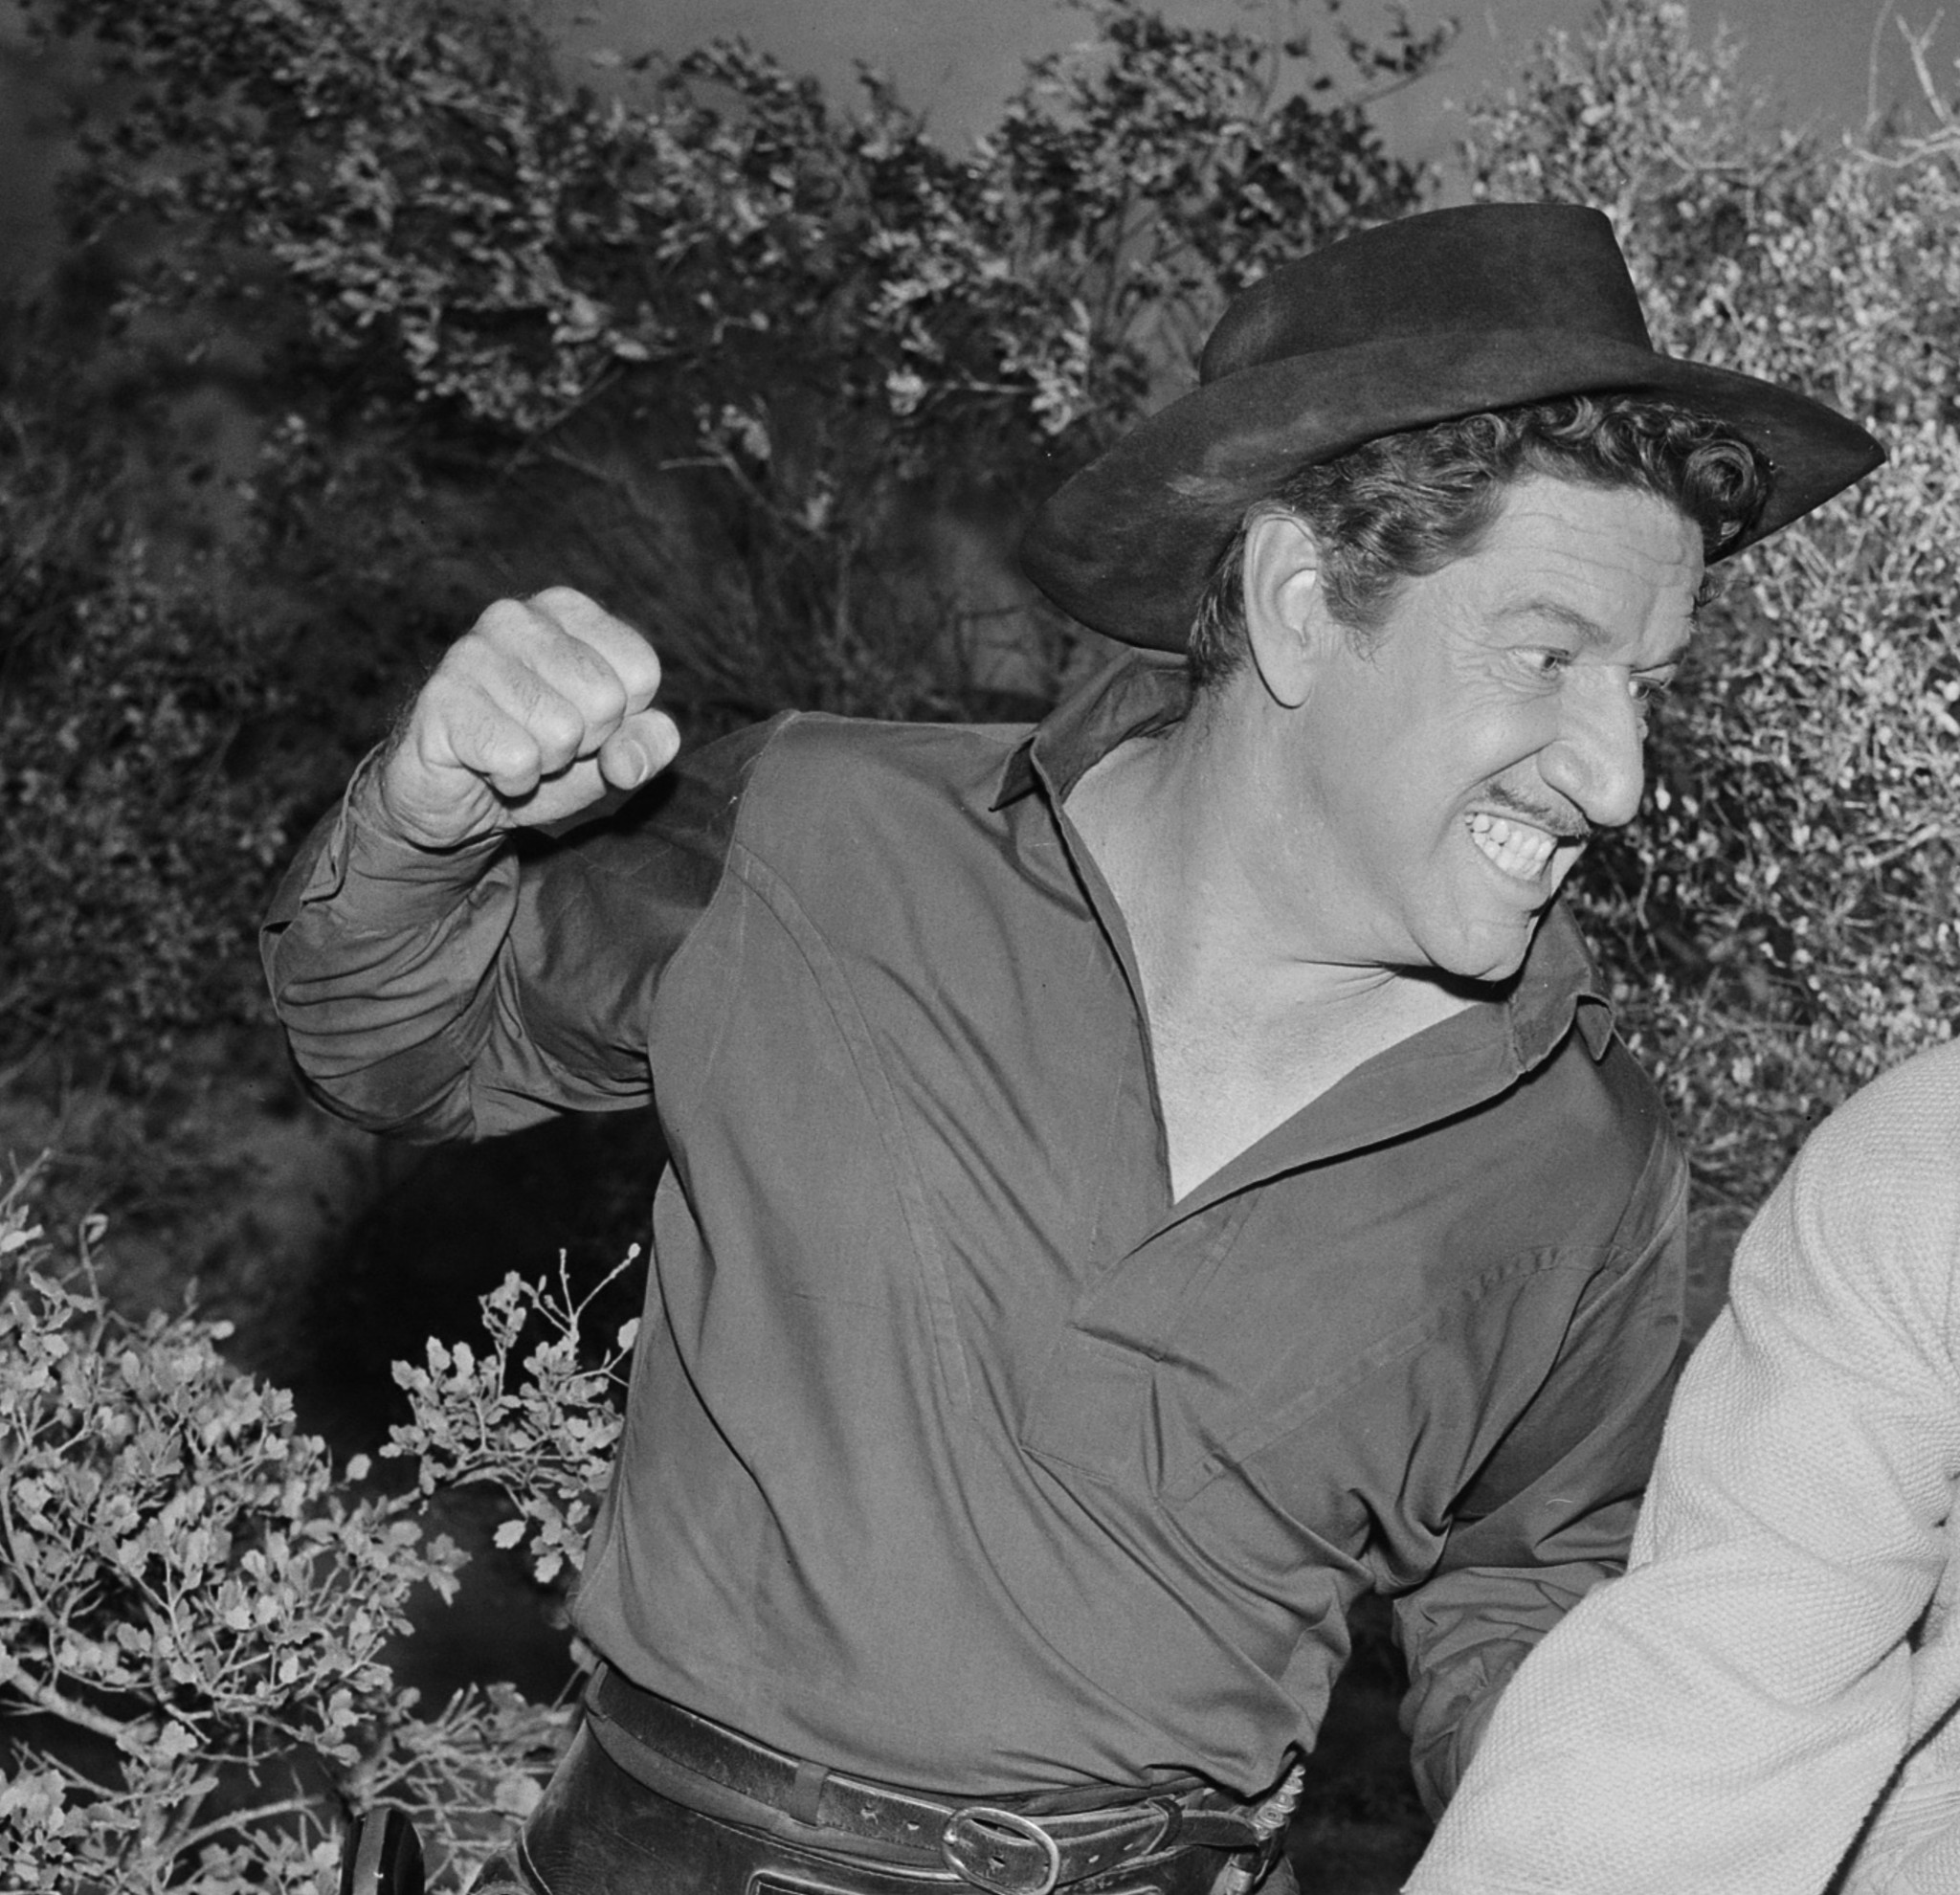 Still of Richard Boone in Have Gun - Will Travel (1957)